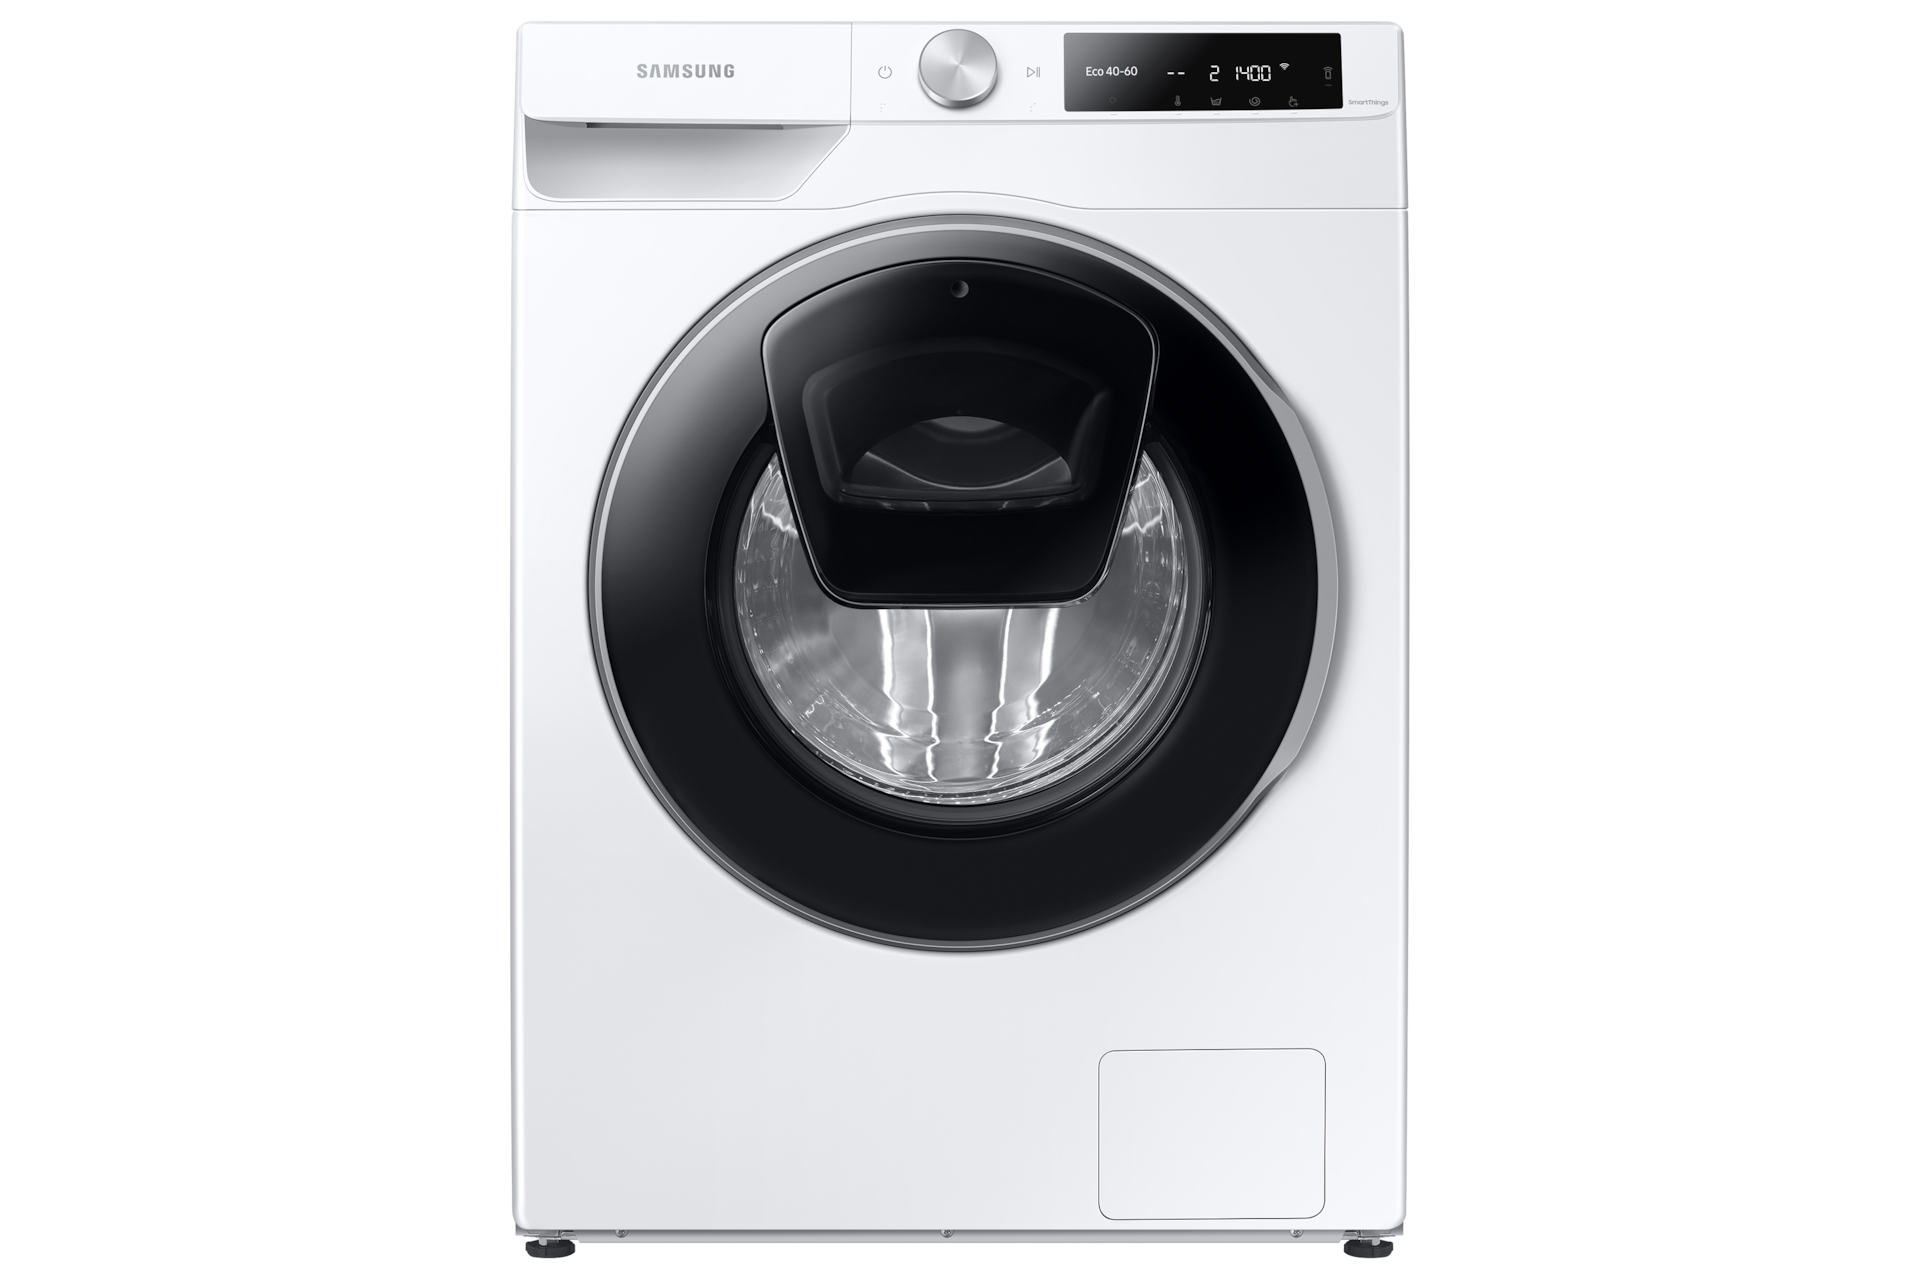 Przód energooszczędnej pralki Samsung Eco Bubble ™ z drzwiami AddWash ™ umożliwiającymi dodanie ubrań po rozpoczęciu cyklu prania - WW80T654DLE/S6